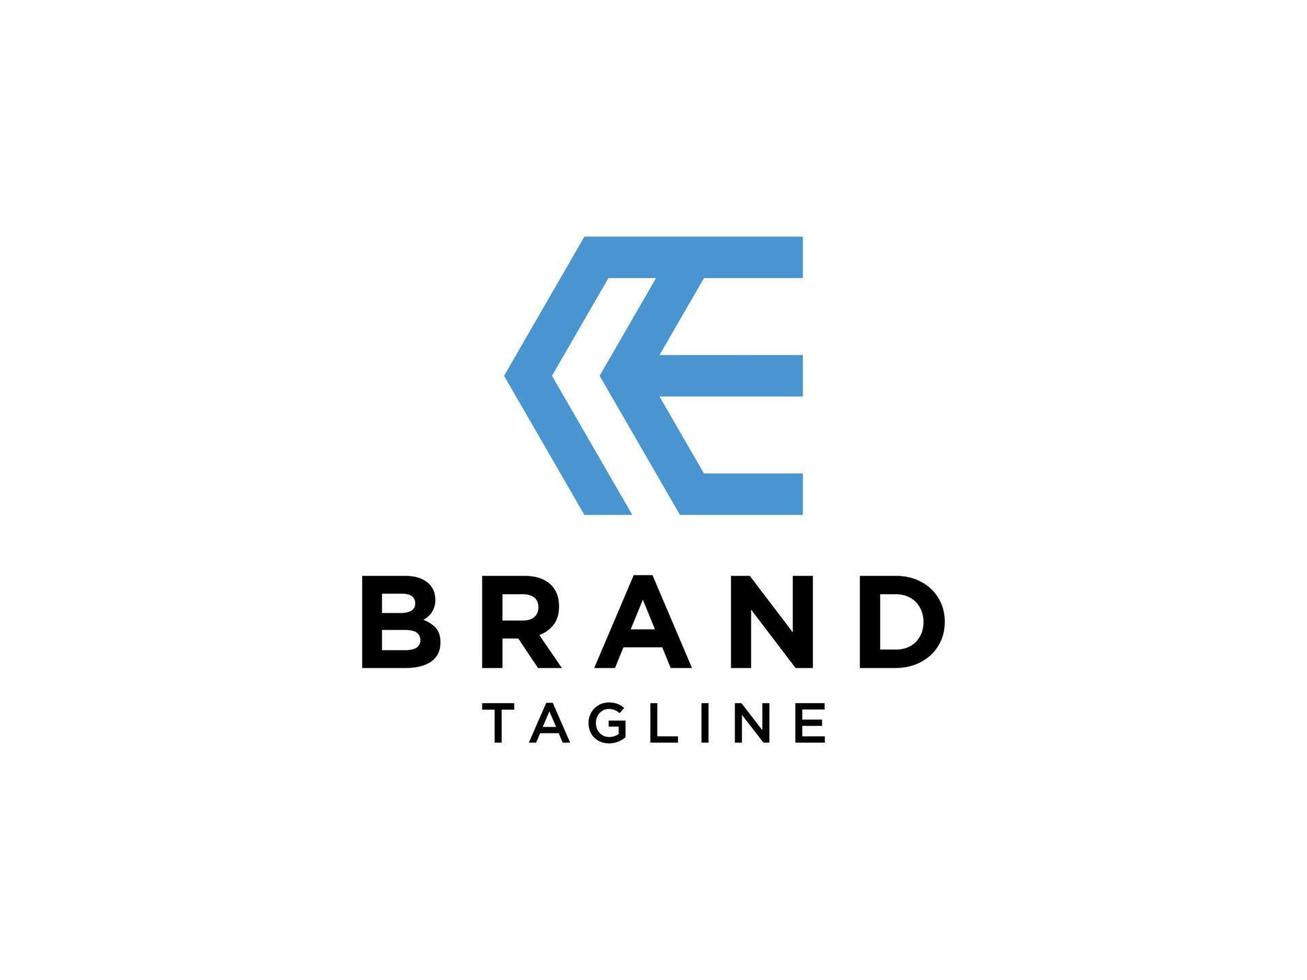 abstrakt första bokstaven e logotyp. blå linjär stil med linjekombination. användbar för företags- och tekniklogotyper. platt vektor logotyp designmall element.